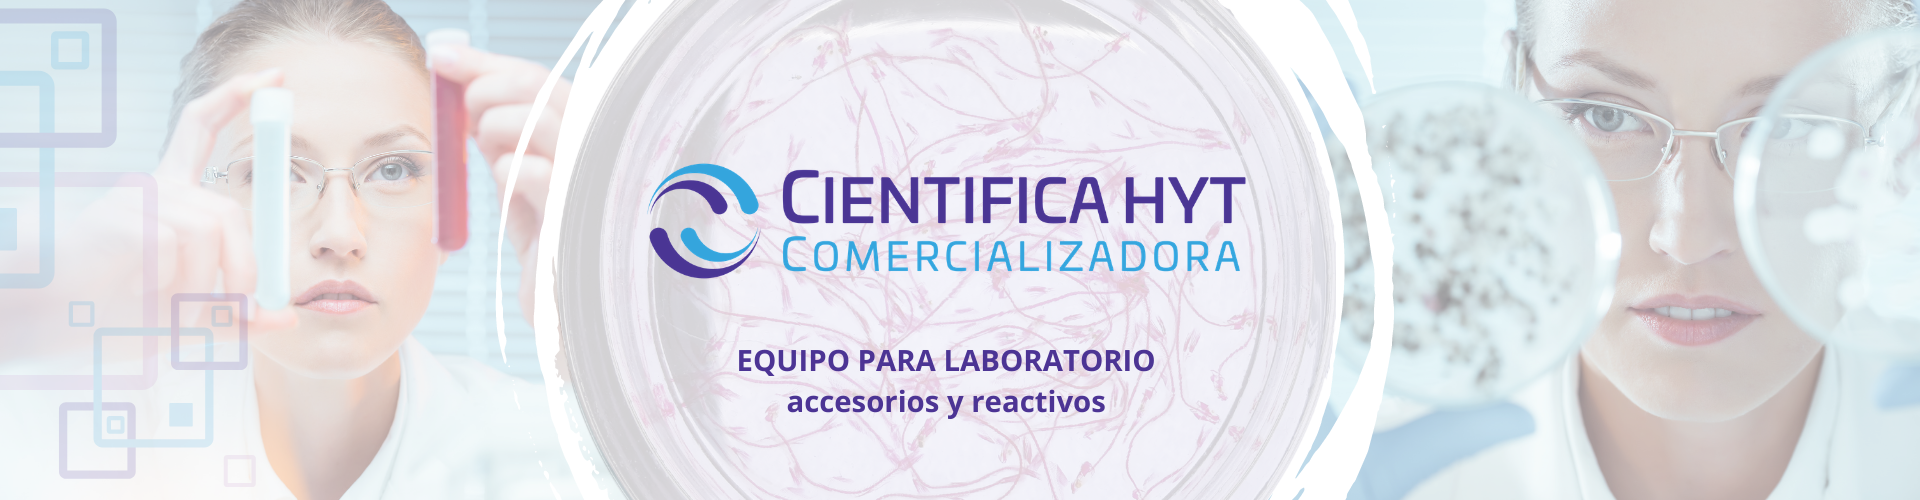 Equipo para laboratorio, accesosiors y reactivos CientificaHyT